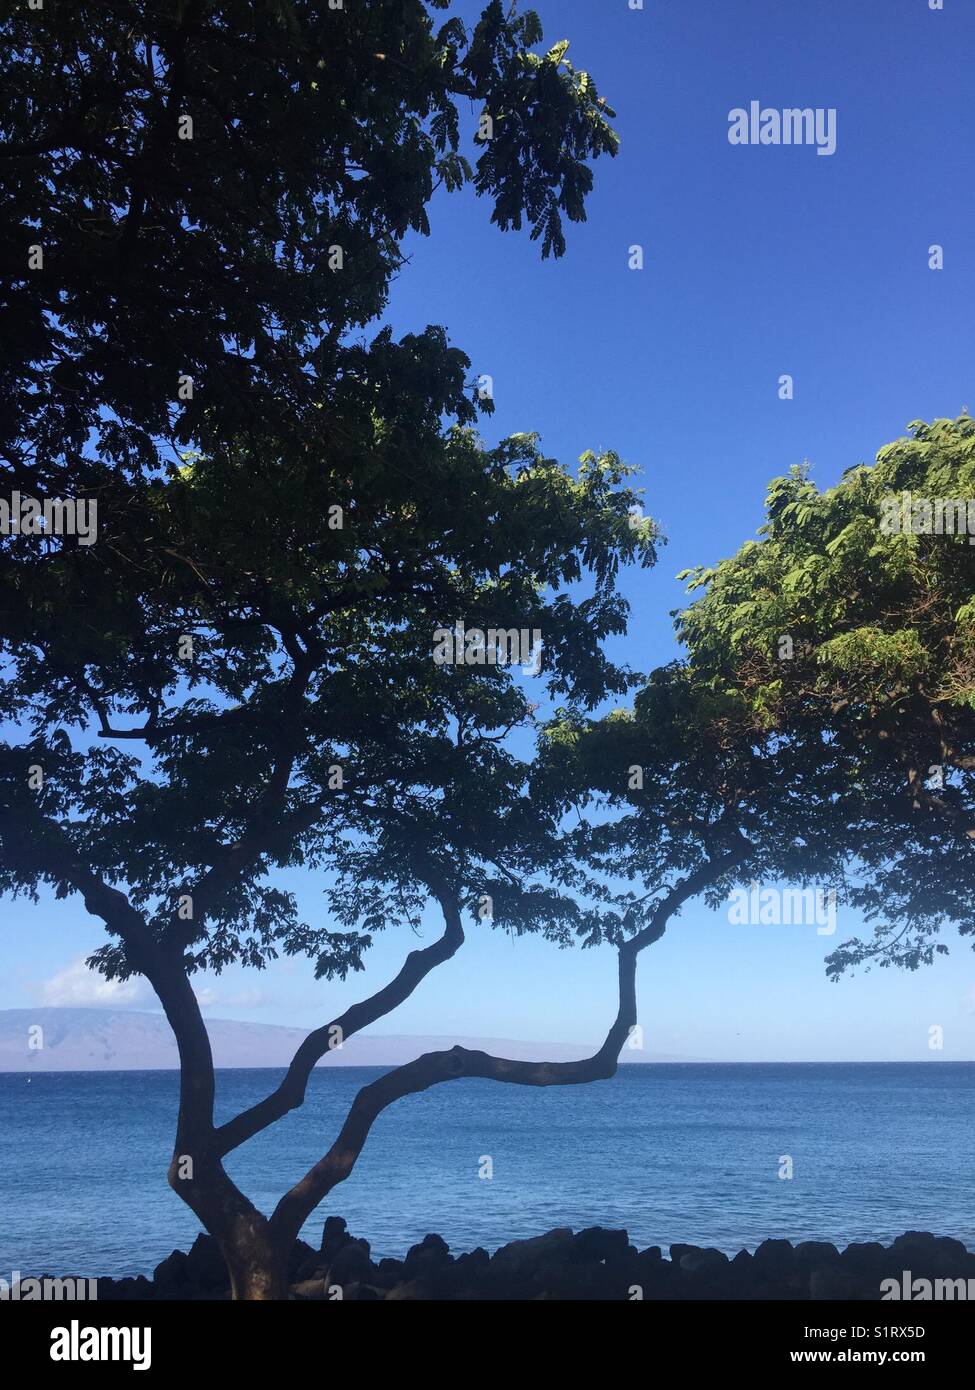 Baum an der Küste von Maui, Hawaii, mit der Insel Lanai im Hintergrund angezeigt Stockfoto